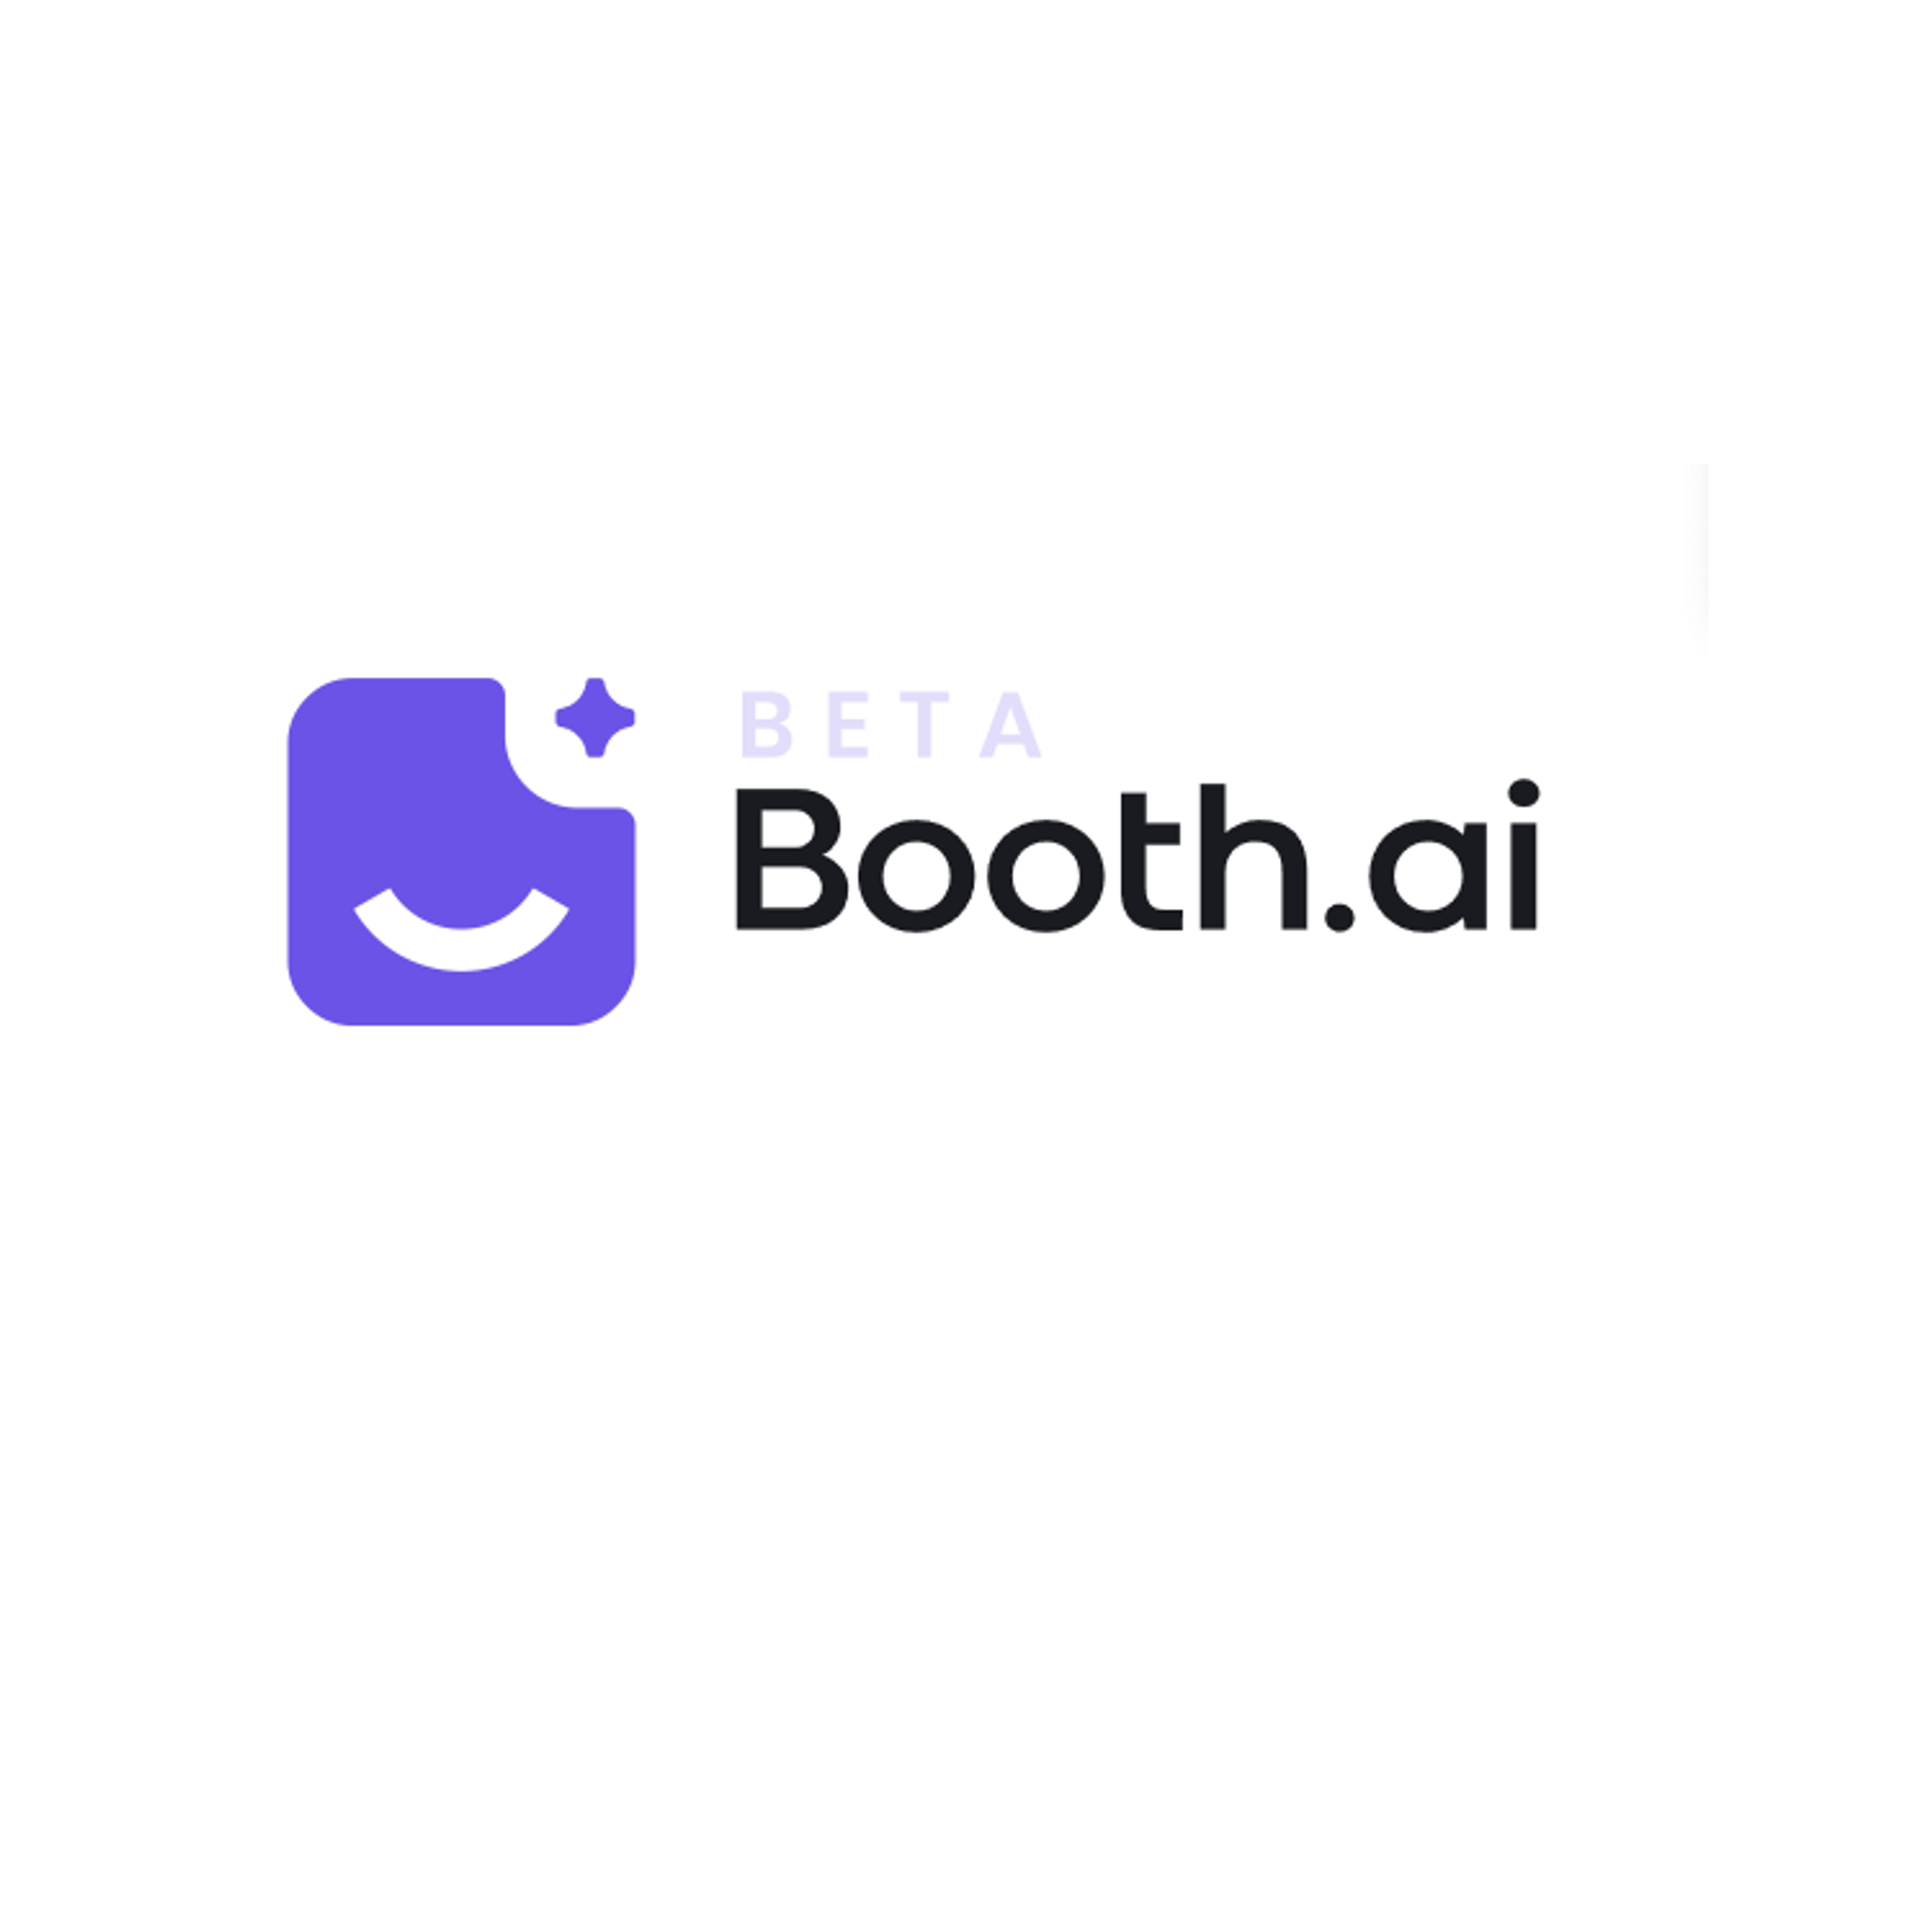 Booth AI